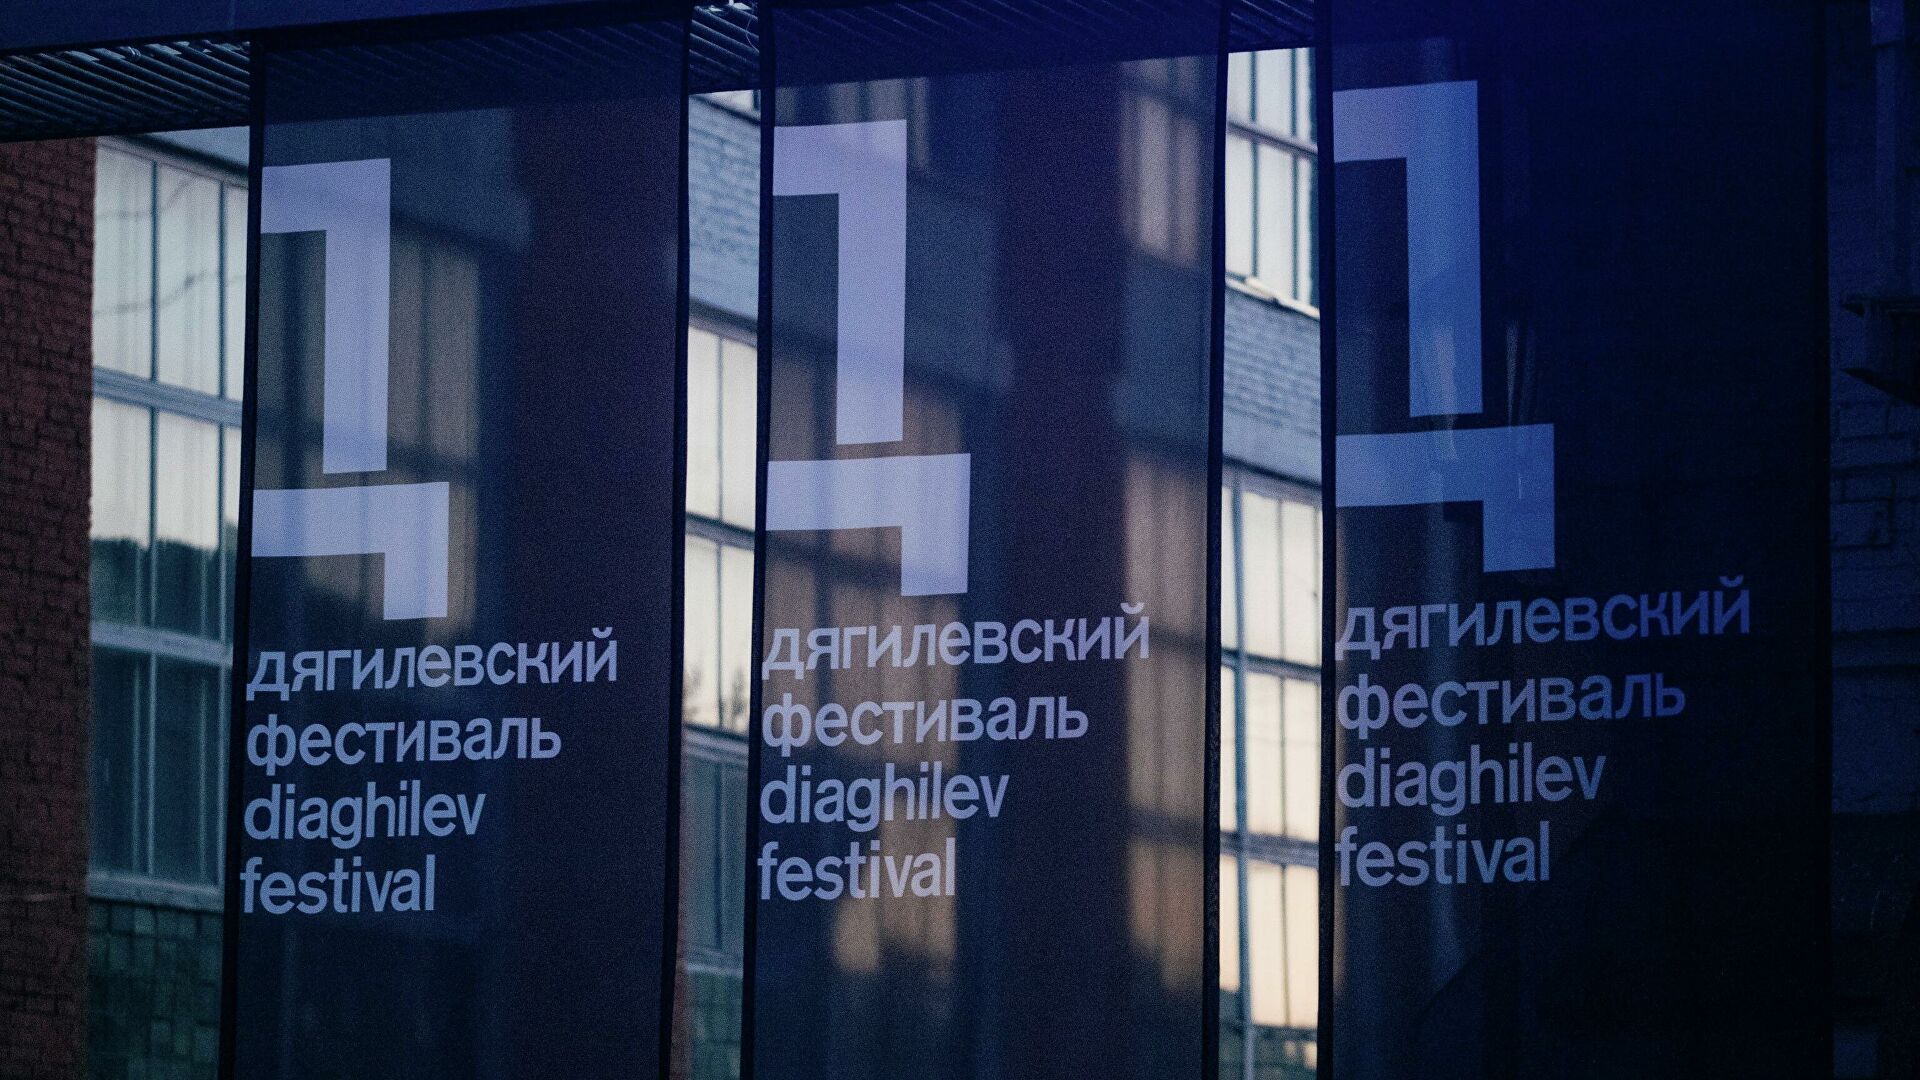 Дягилевский фестиваль открылся в Перми 